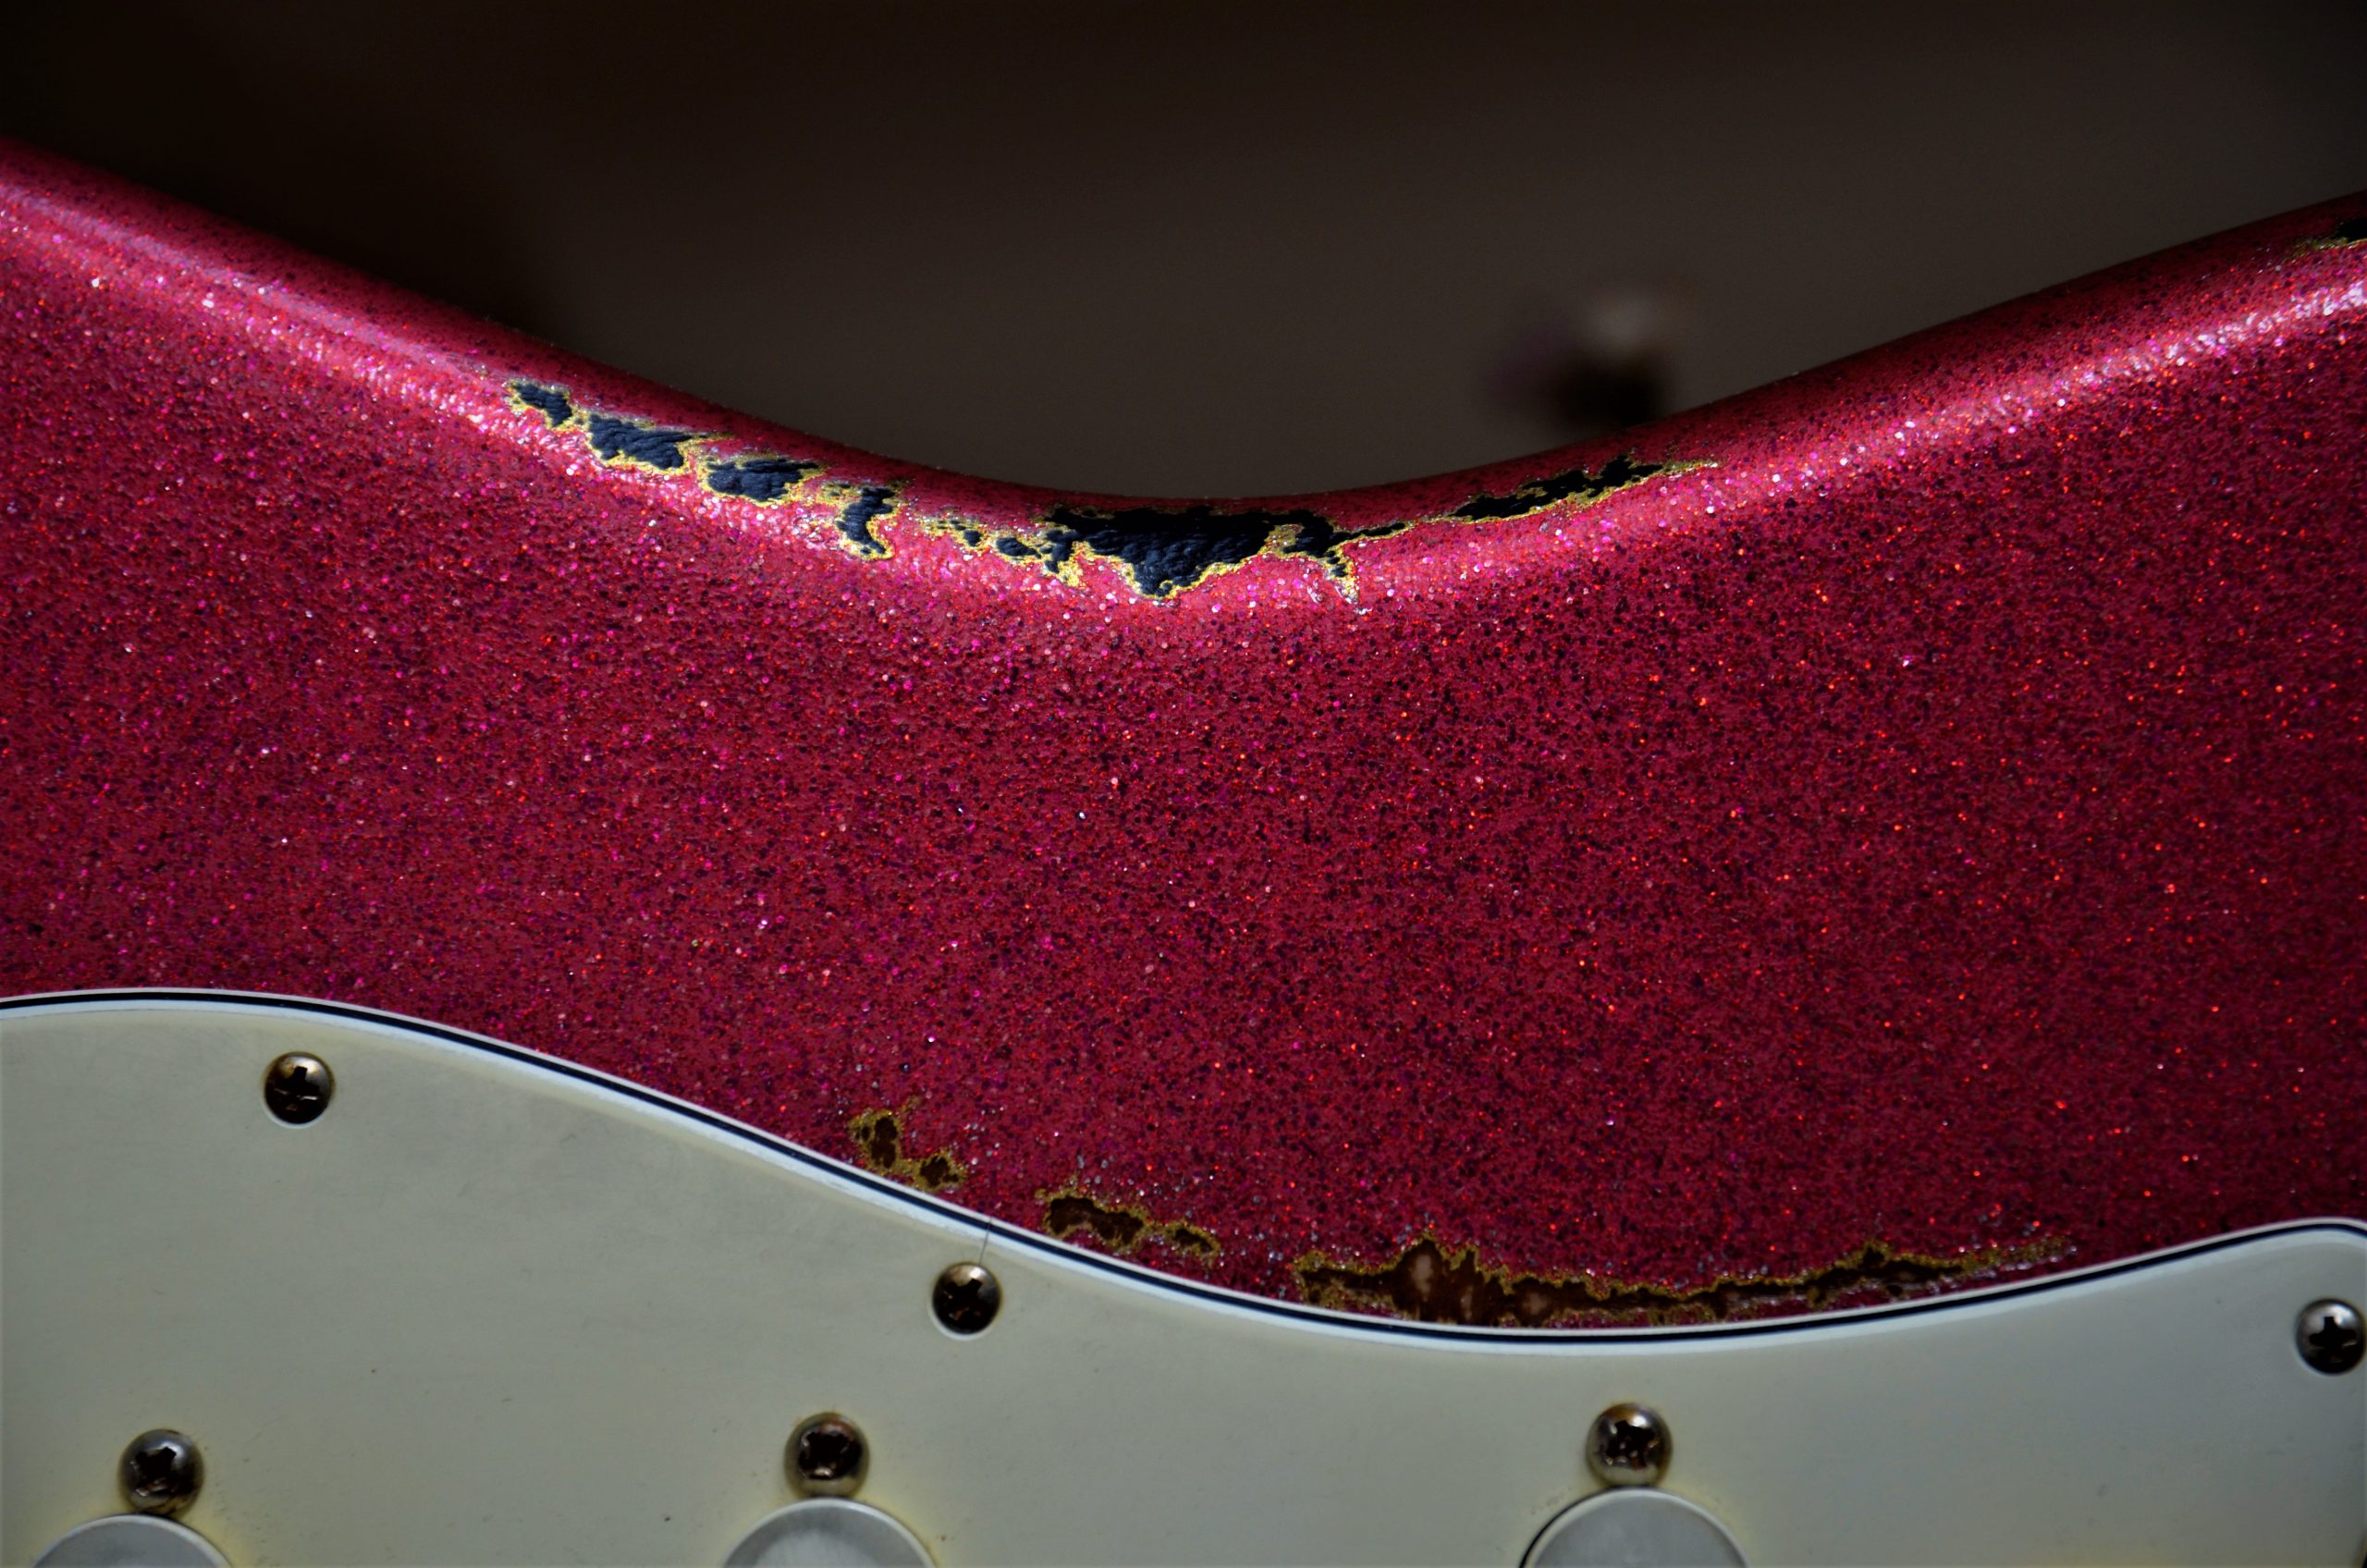 Fender Custom Stratocaster Relic Red Sparkle